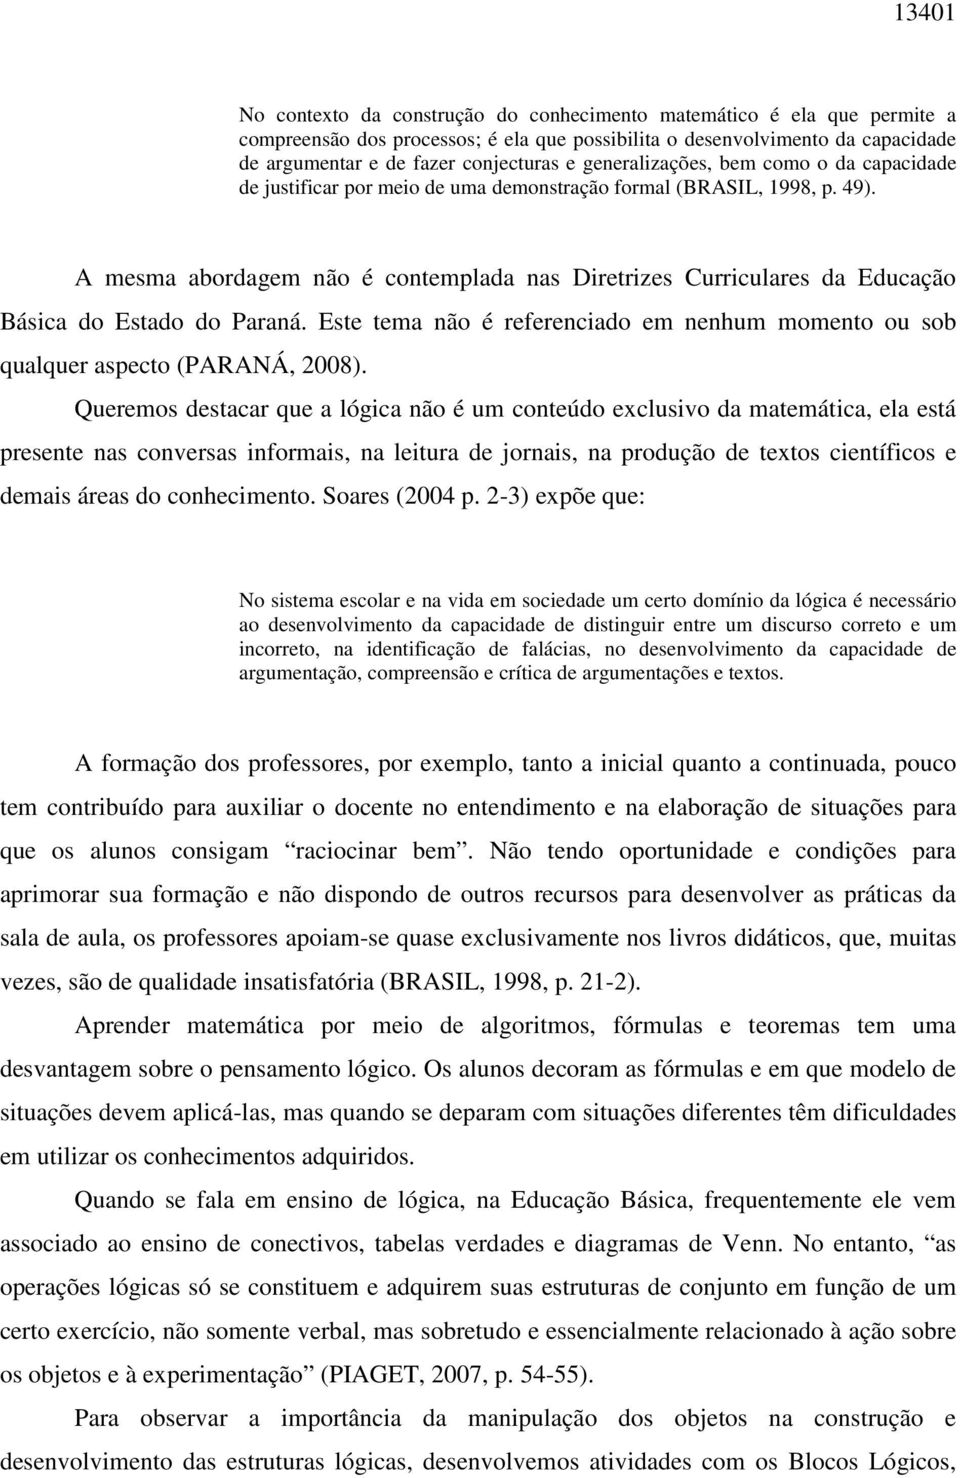 A mesma abordagem não é contemplada nas Diretrizes Curriculares da Educação Básica do Estado do Paraná. Este tema não é referenciado em nenhum momento ou sob qualquer aspecto (PARANÁ, 2008).